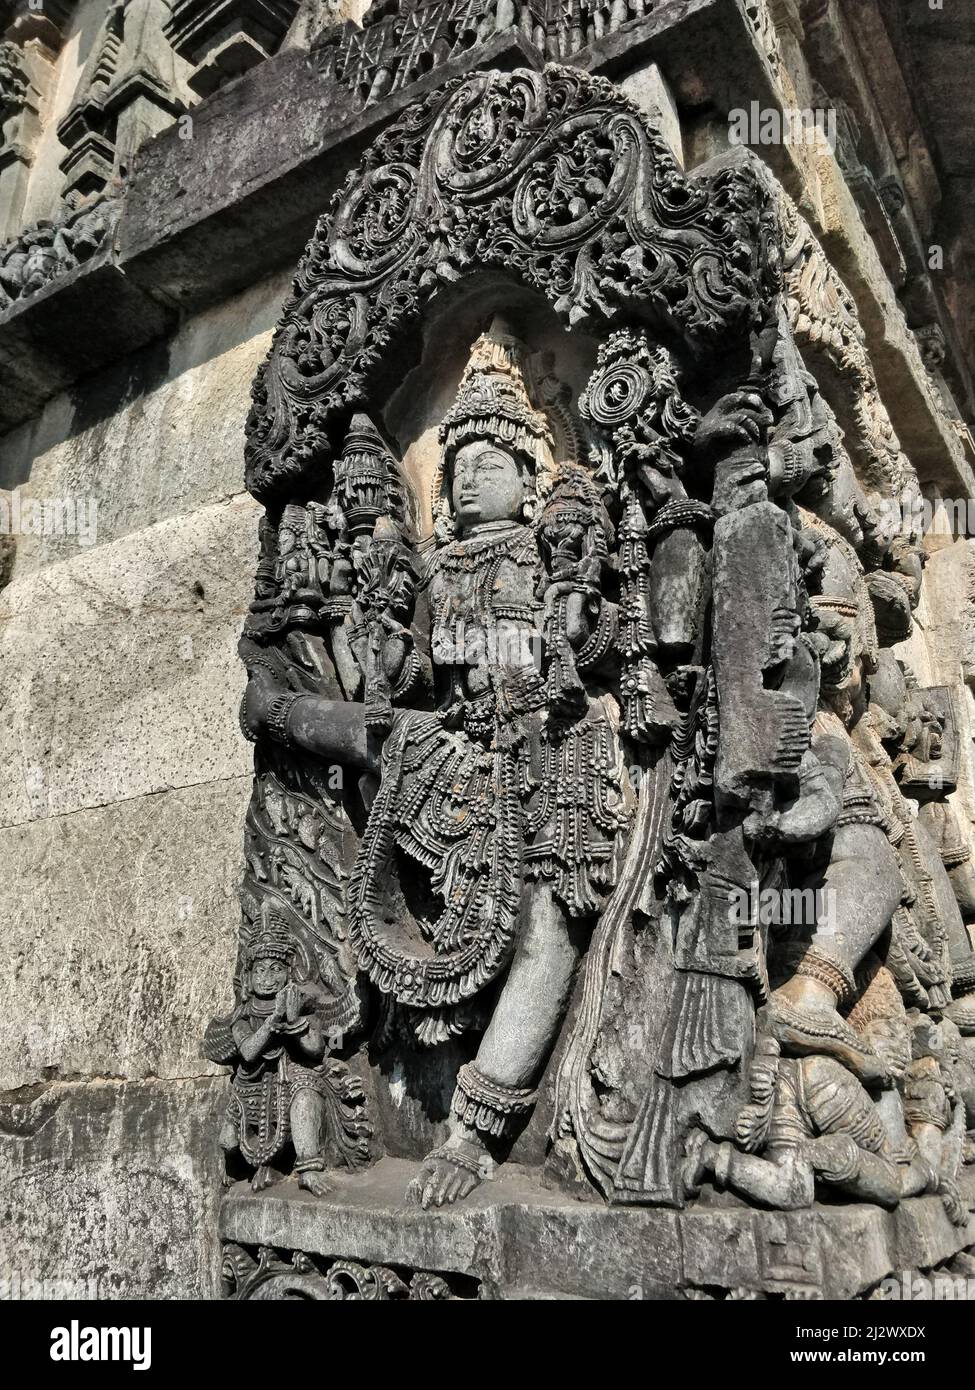 Statue de Vamana (avtar de Vishnu) sur panneau mural orné au complexe du temple de Chennakesava, Belur, Karnataka, Inde. Glissière à droite, angle bas. Banque D'Images